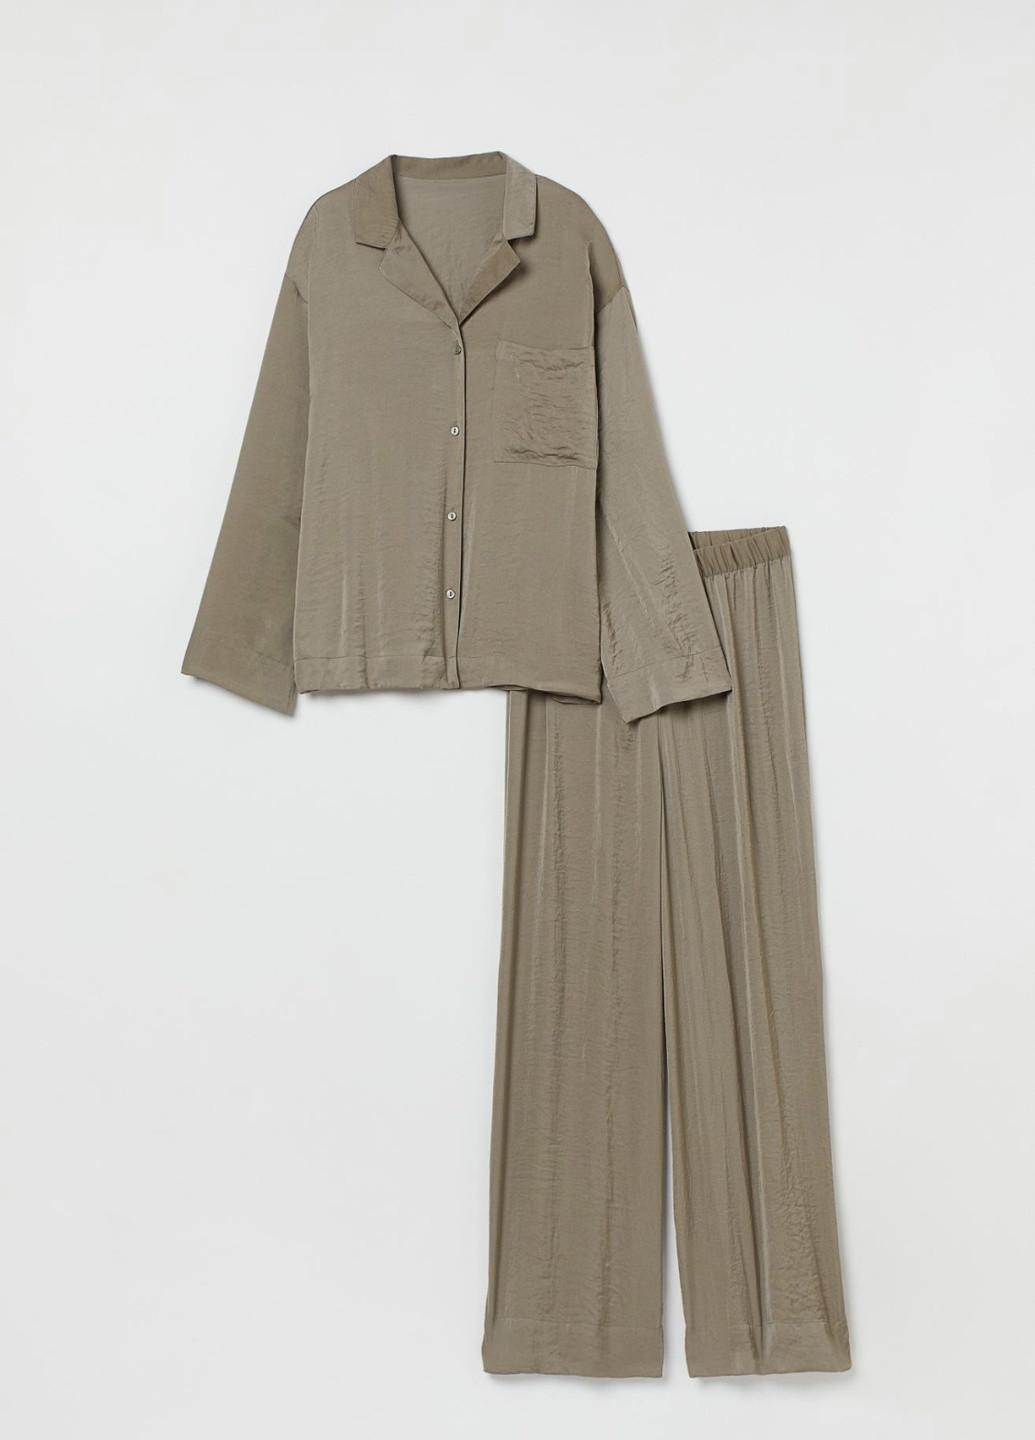 Оливковая (хаки) всесезон комплект премиум качества рубашка + брюки H&M Oversize set